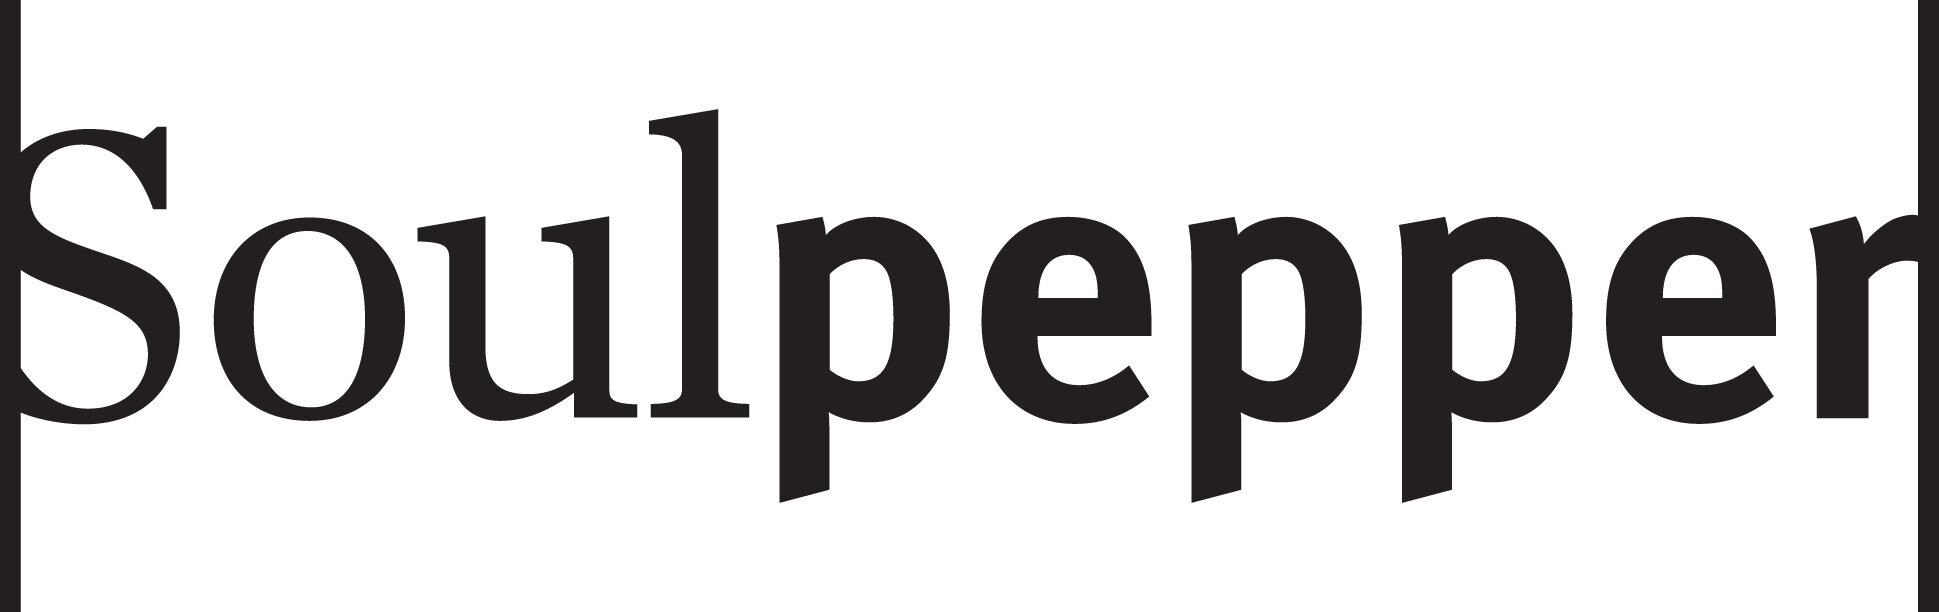 soulpepper-logo-blk.jpg